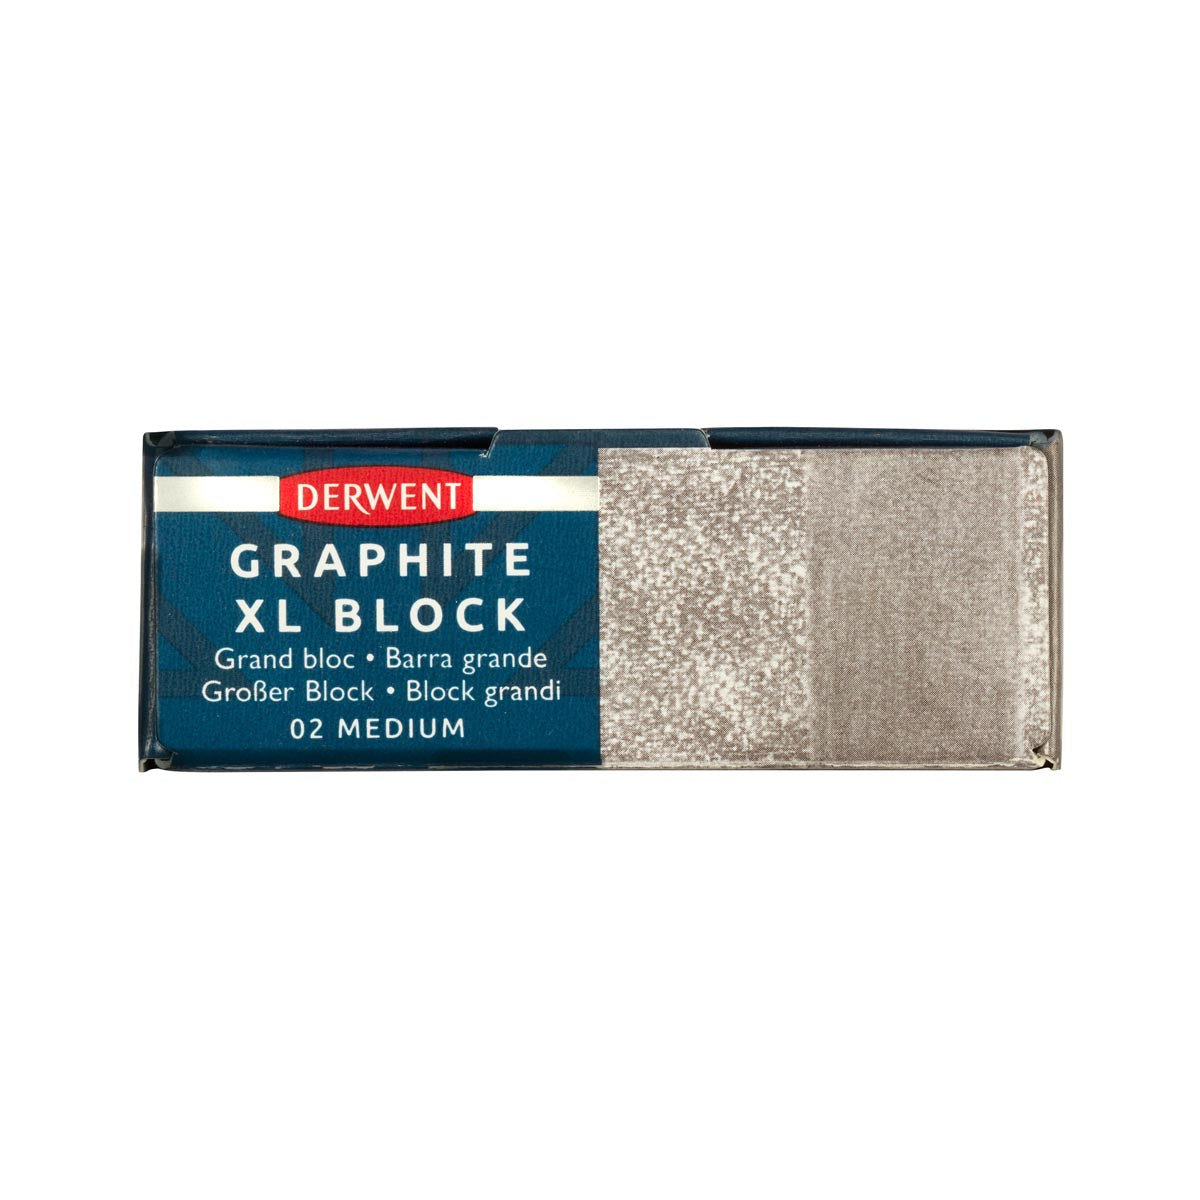 Derwent - Graphite XL Block - Medium